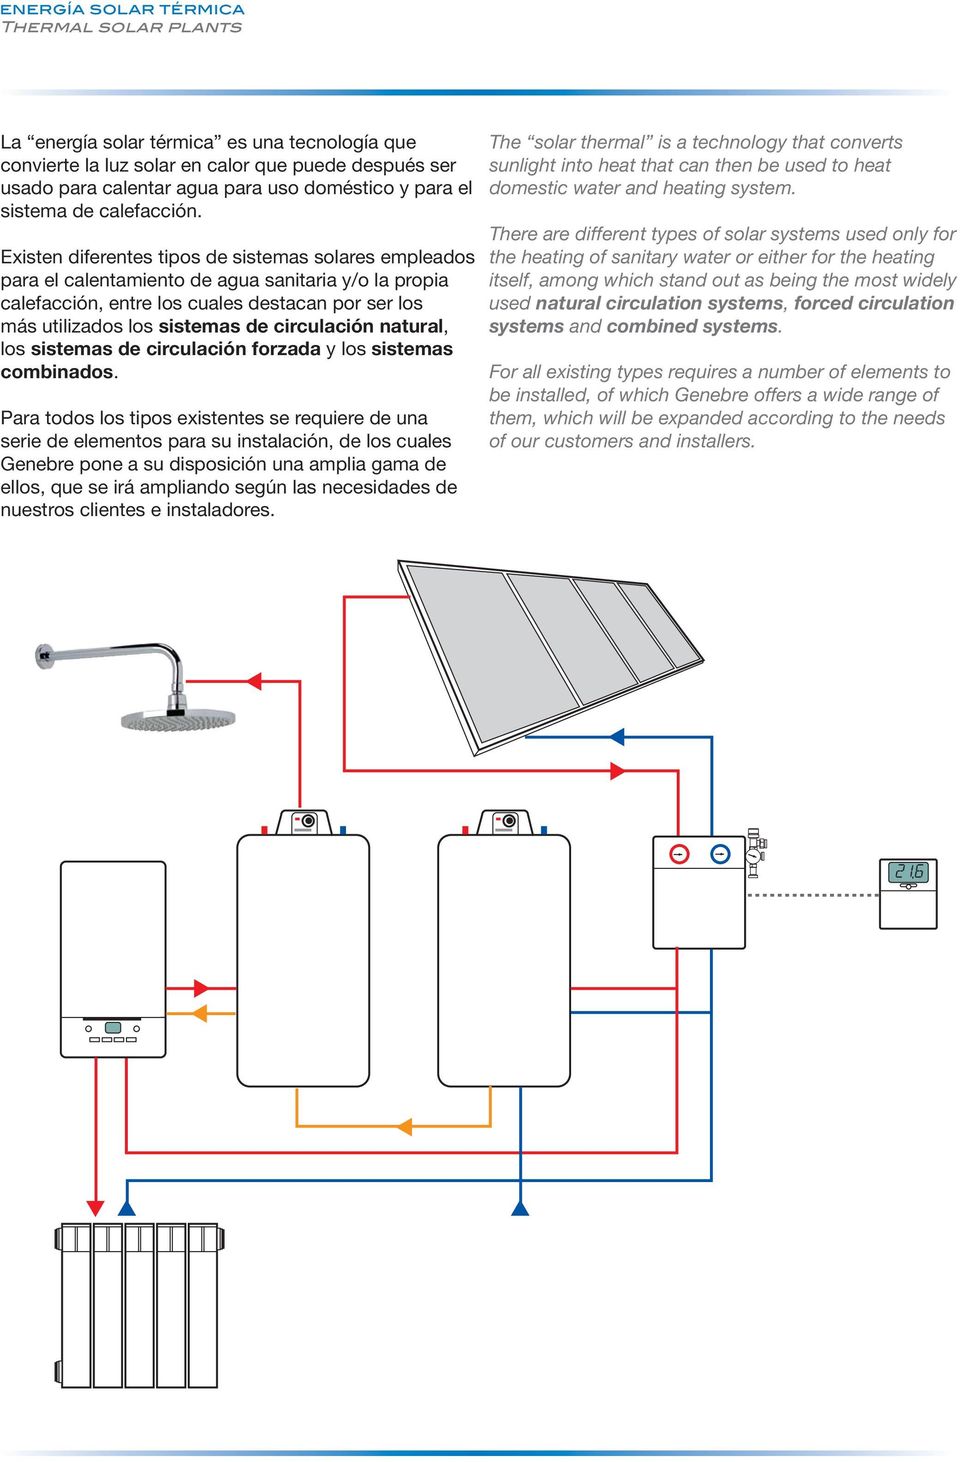 Existen diferentes tipos de sistemas solares empleados para el calentamiento de agua sanitaria y/o la propia calefacción, entre los cuales destacan por ser los más utilizados los sistemas de